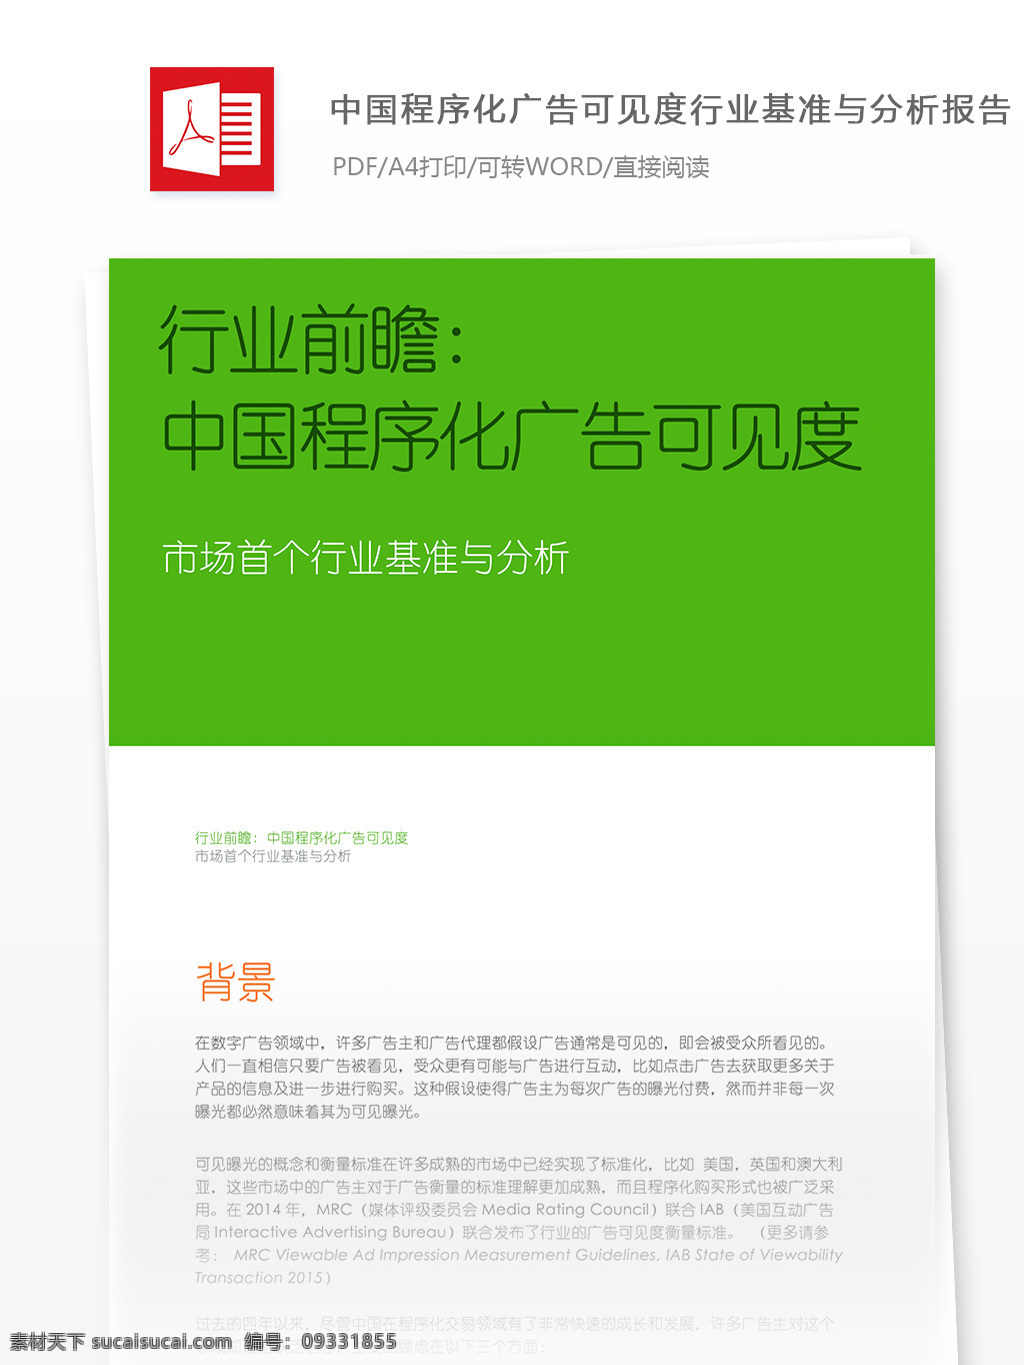 中国 程序化 广告 可见度 行业 基准 分析报告 程序化广告 行业分析报告 报告模板 广告模板 广告公关 广告报告 数据报告 互联网广告 互联网 广告分析